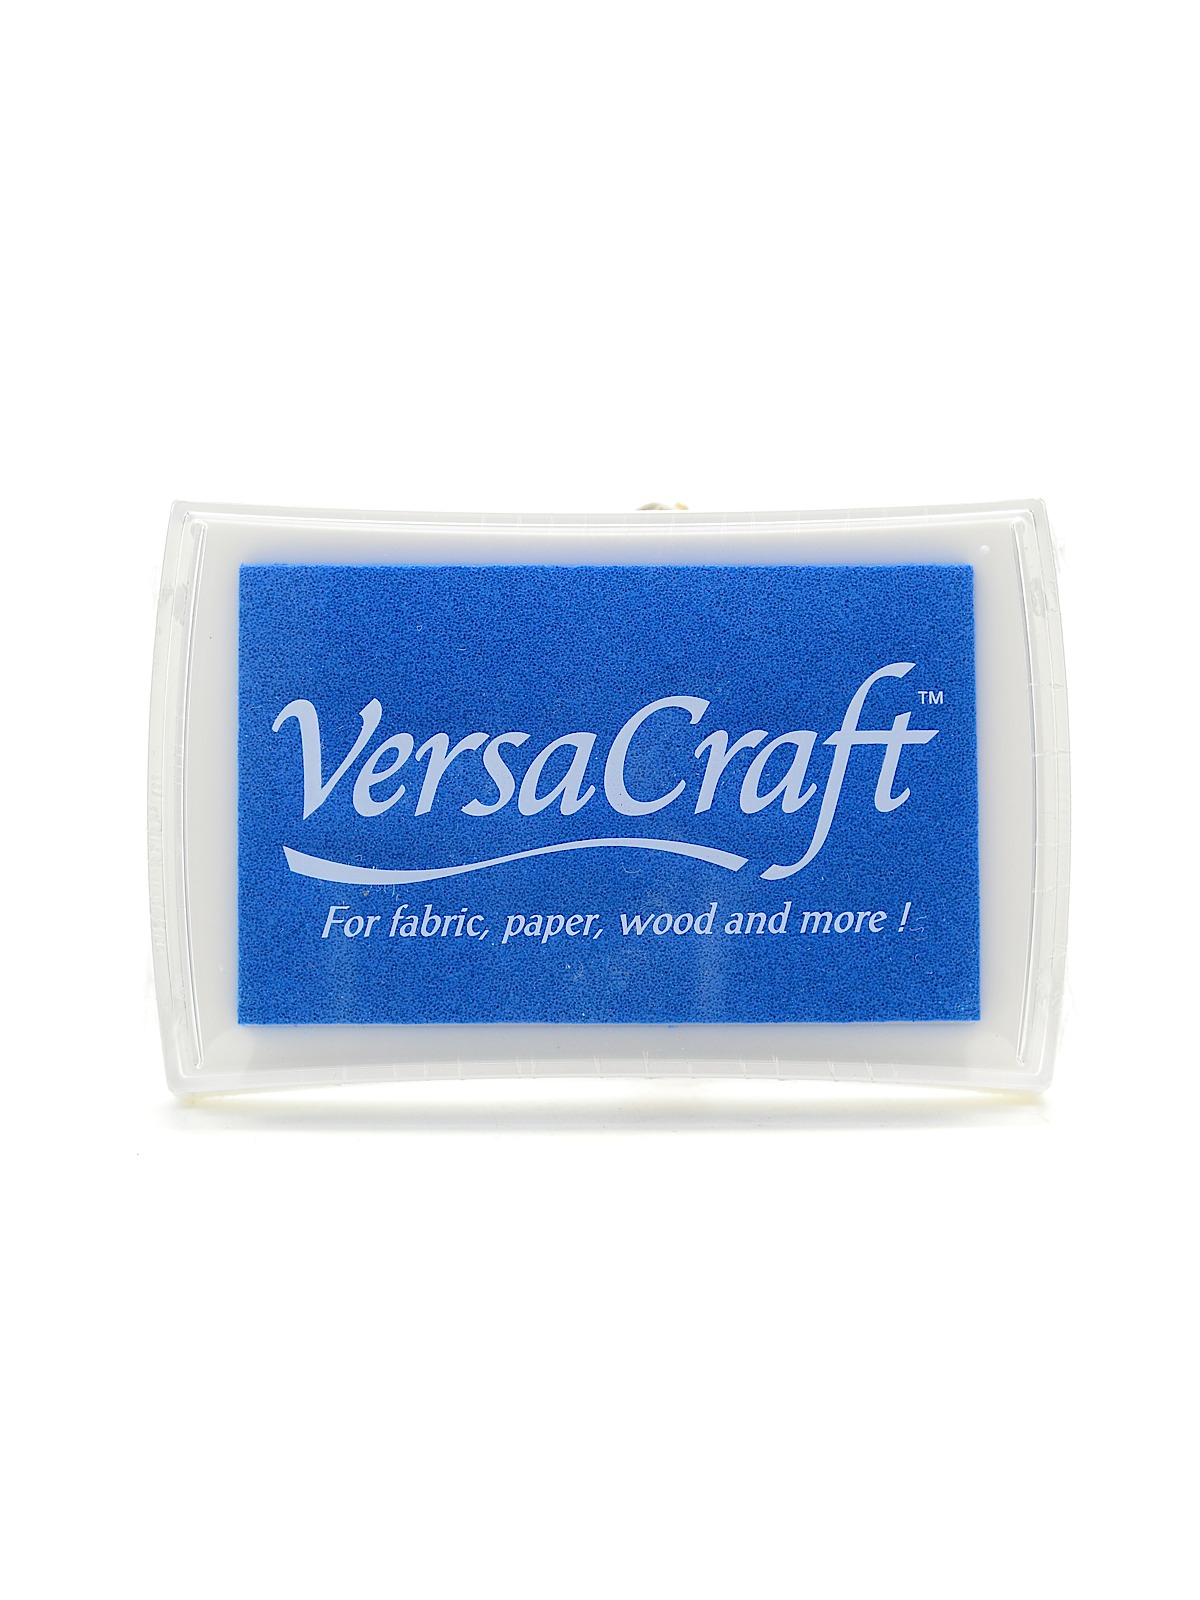 Versacraft Ink Cerulean Blue 3.75 In. X 2.5 In. Pad